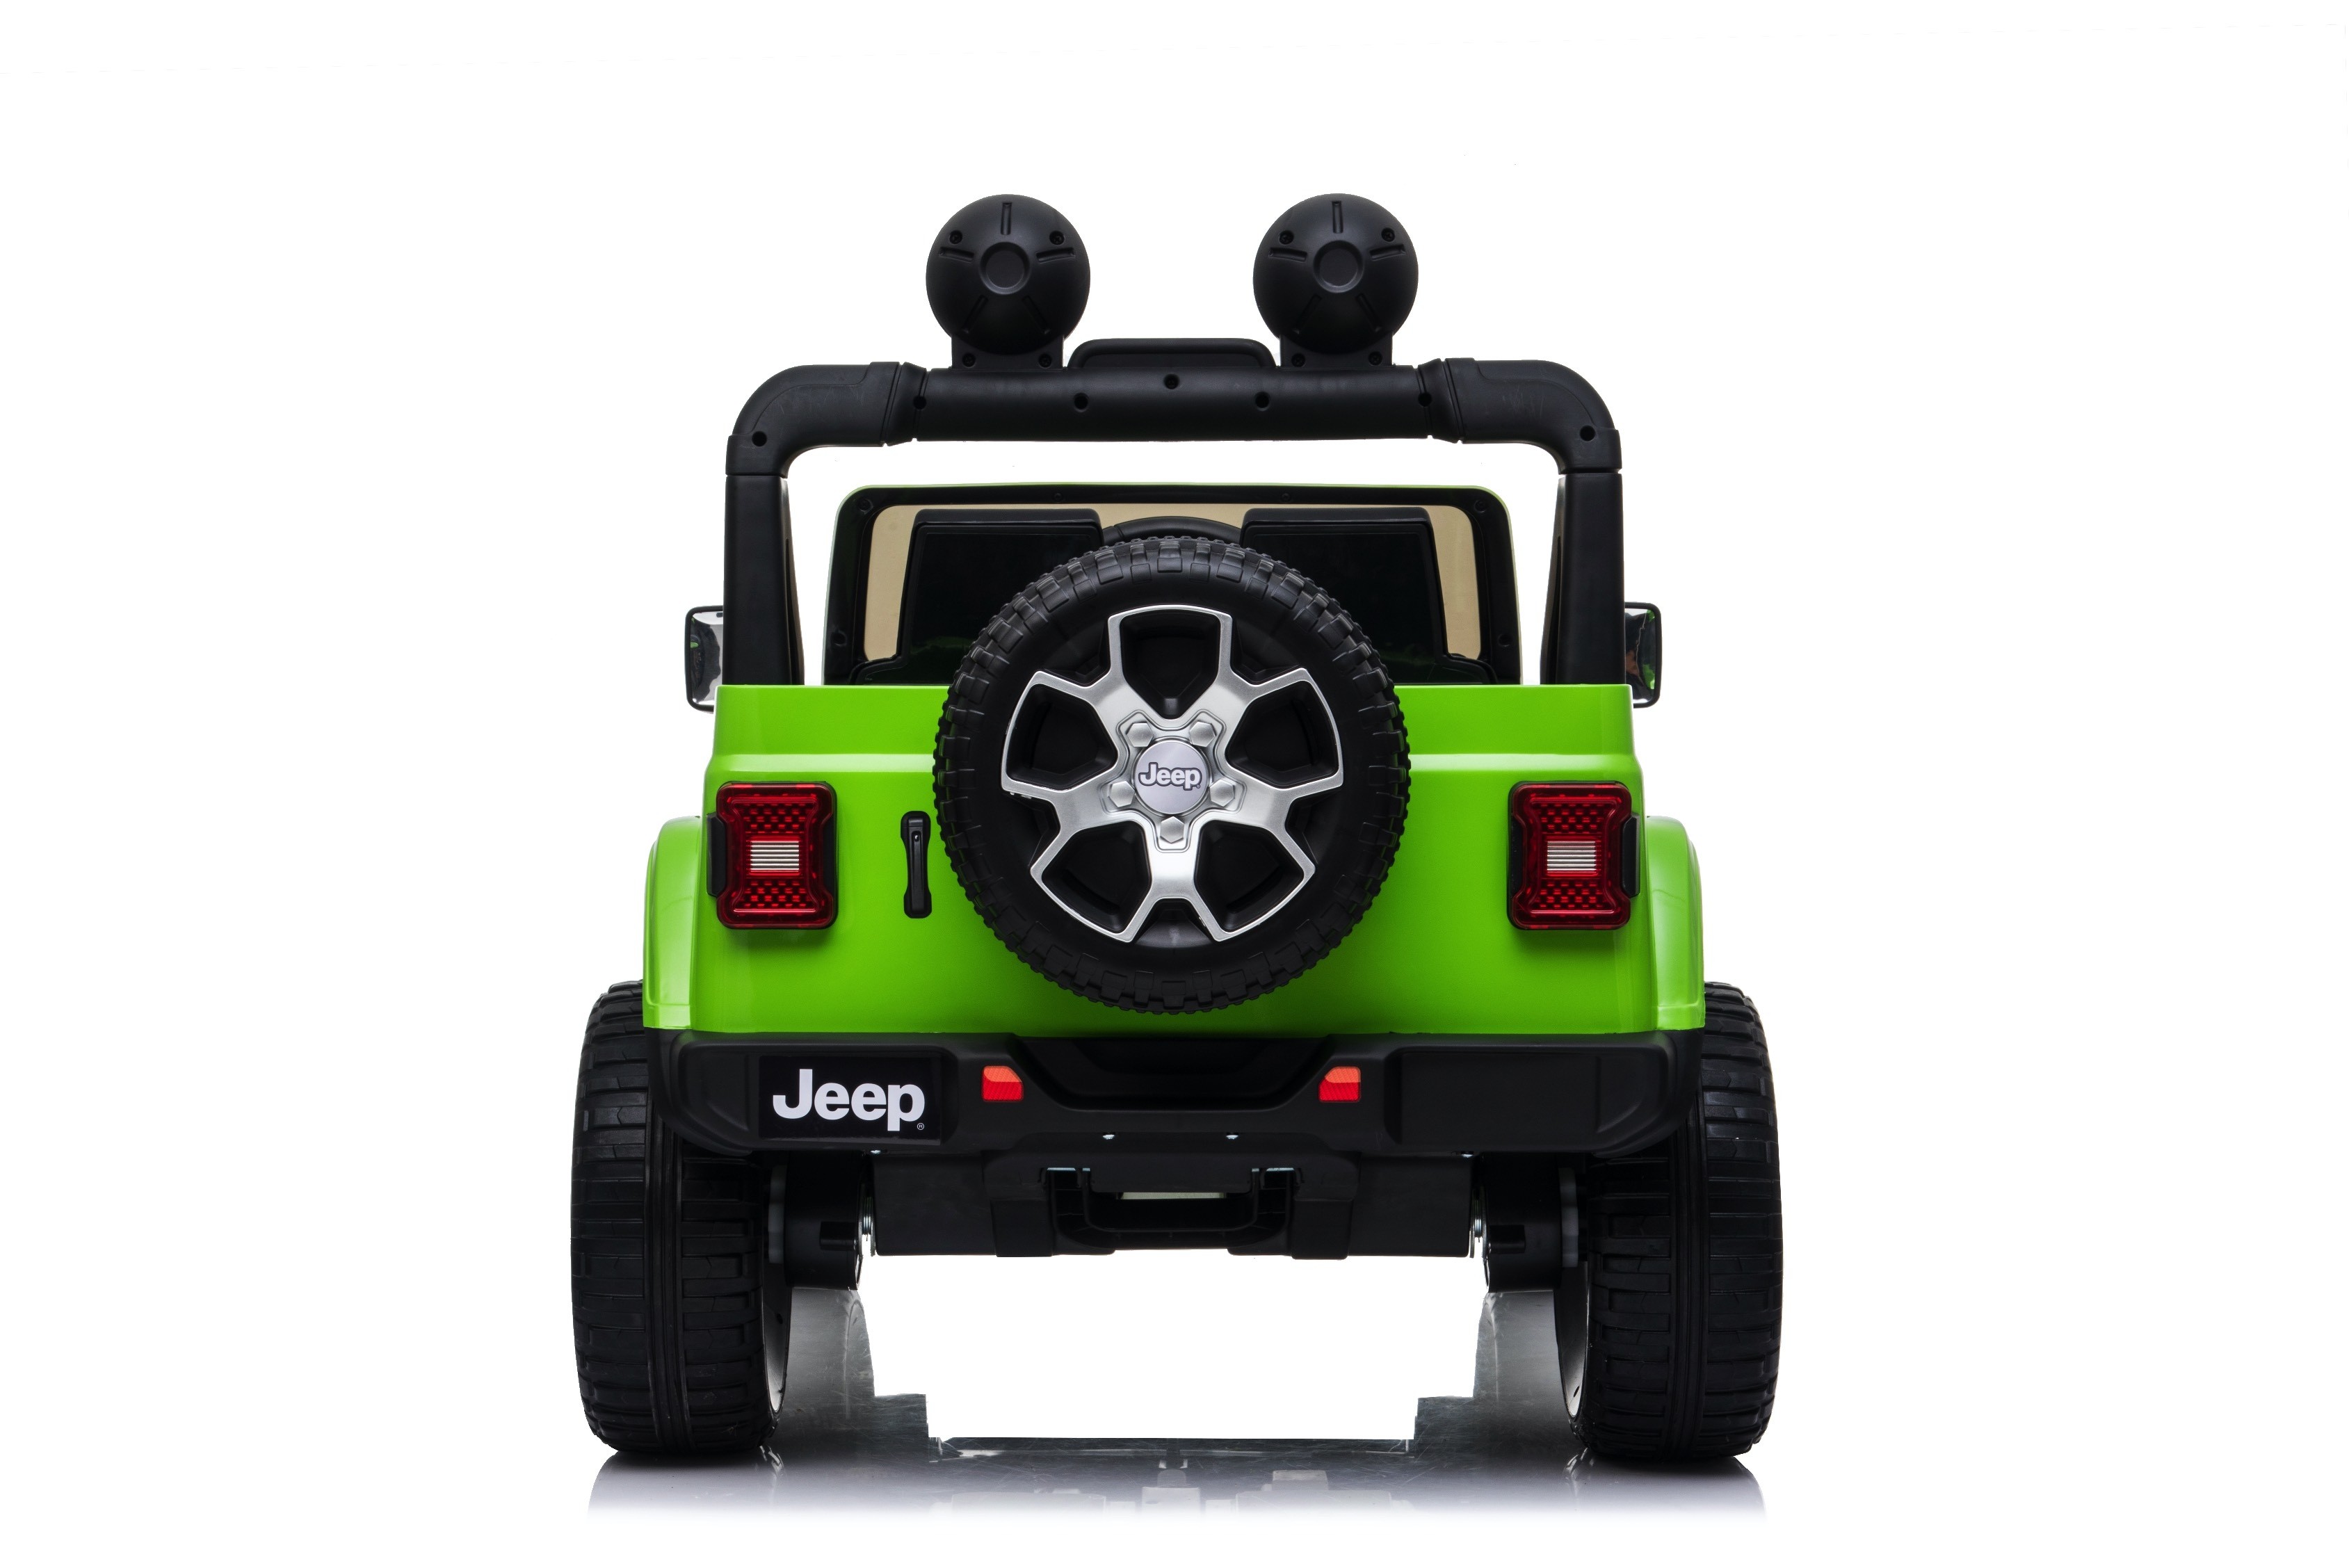 TOYSCAR electronic way to drive Auto Macchina Elettrica Jeep Wrangler Rubicon 12V per Bambini Porte apribili con Telecomando Full Accessori Green